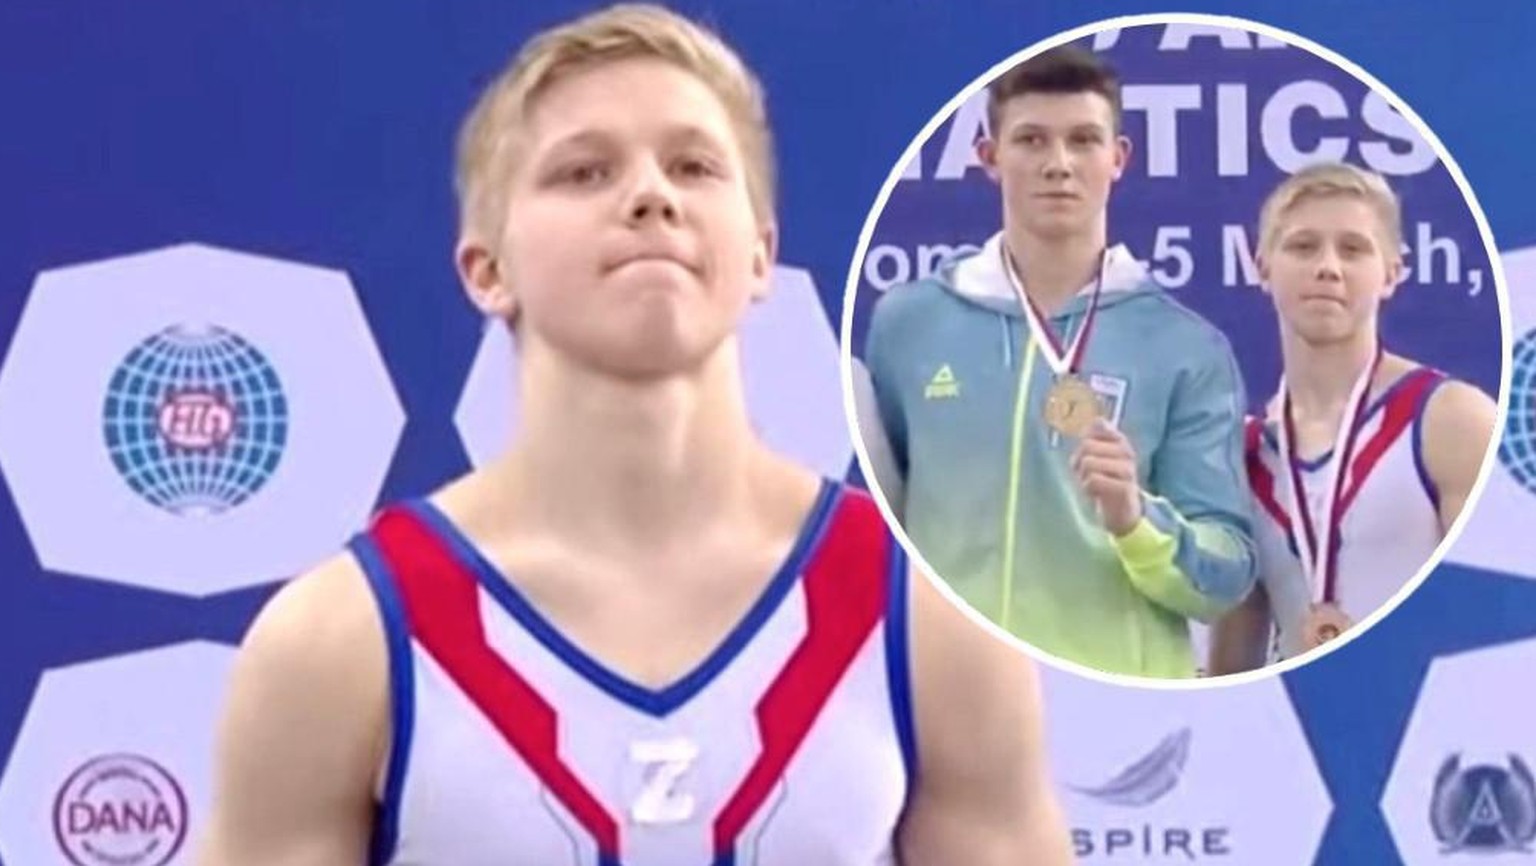 Der Ukrainer Illja Kowtun musste an der Siegerehrung neben dem Russen Iwan Kuliak stehen, der stolz das Kriegszeichen «Z» zeigte.